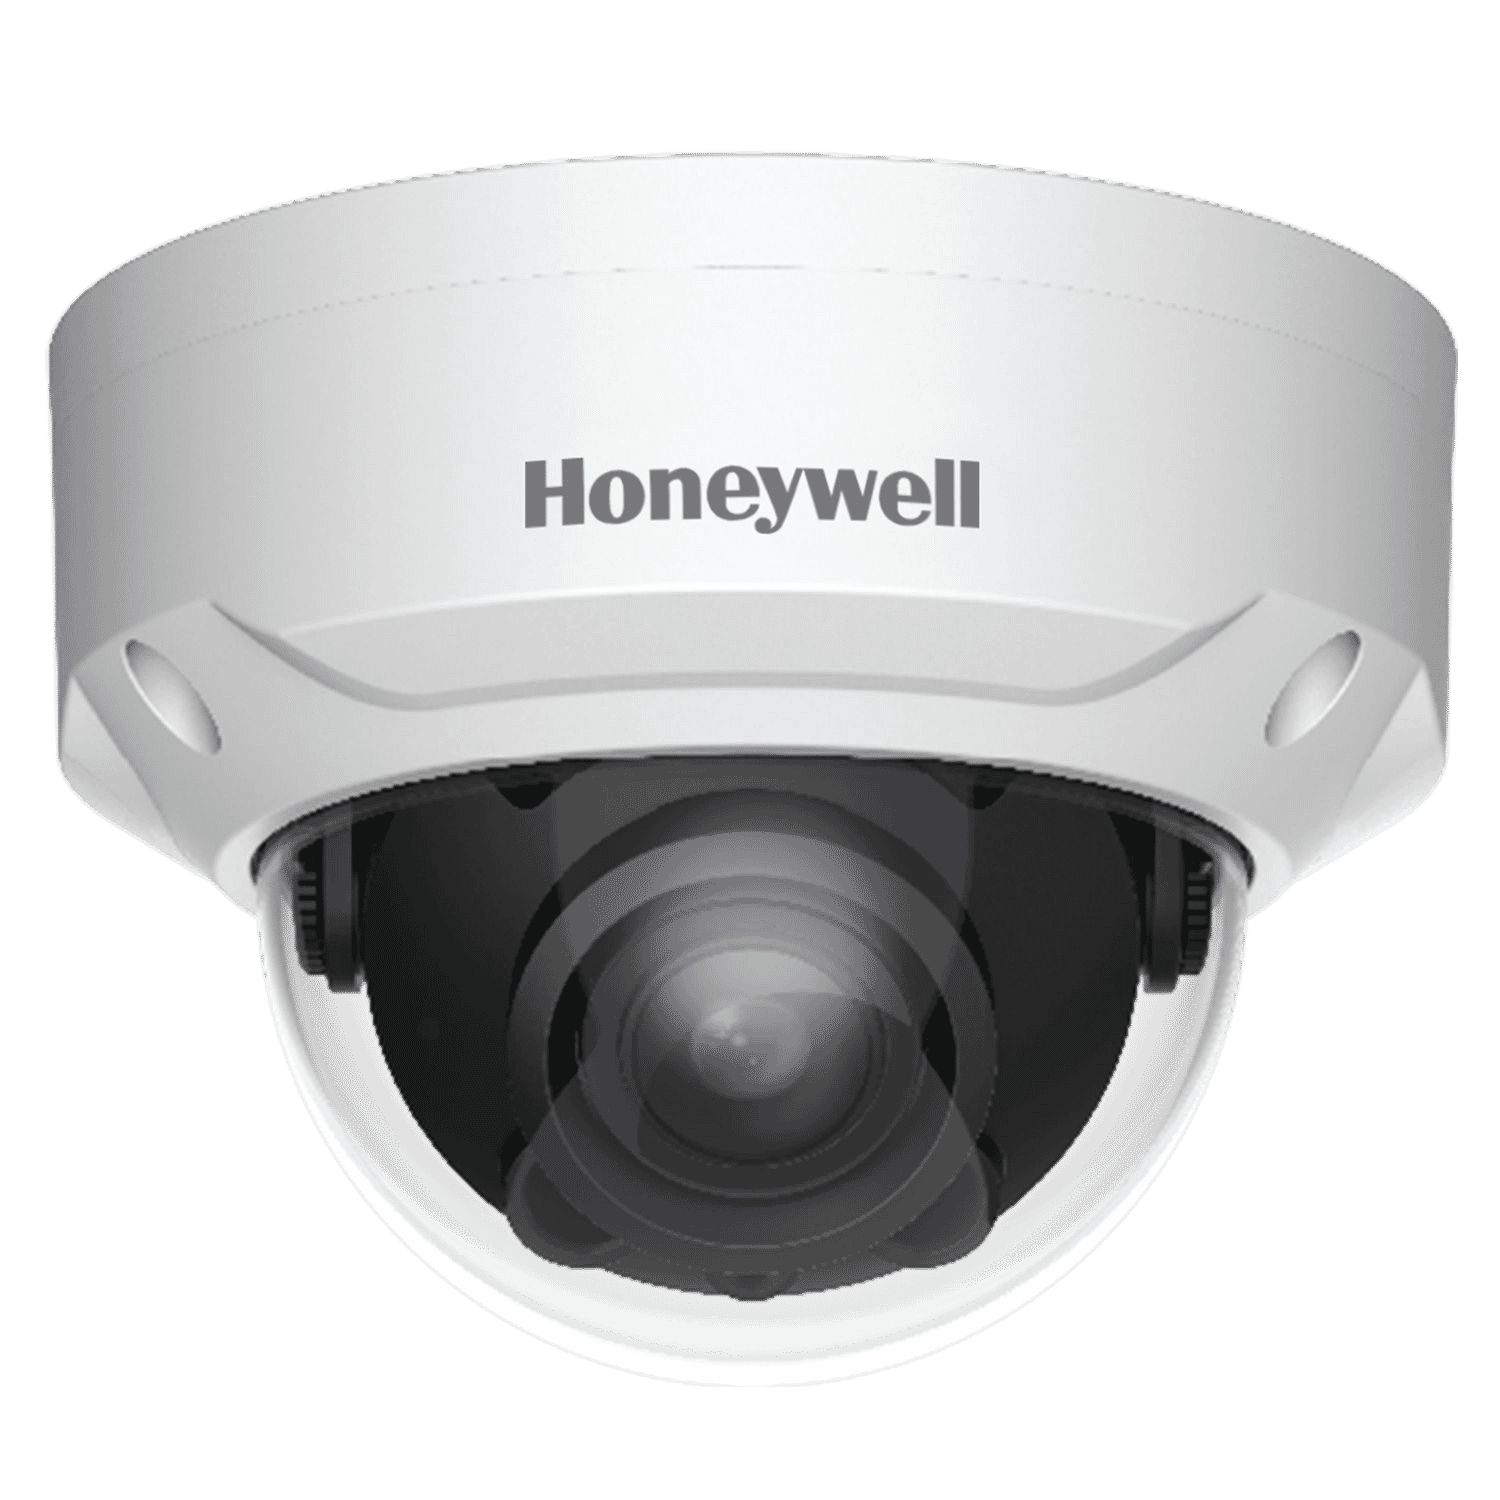 honeywell camera config tool